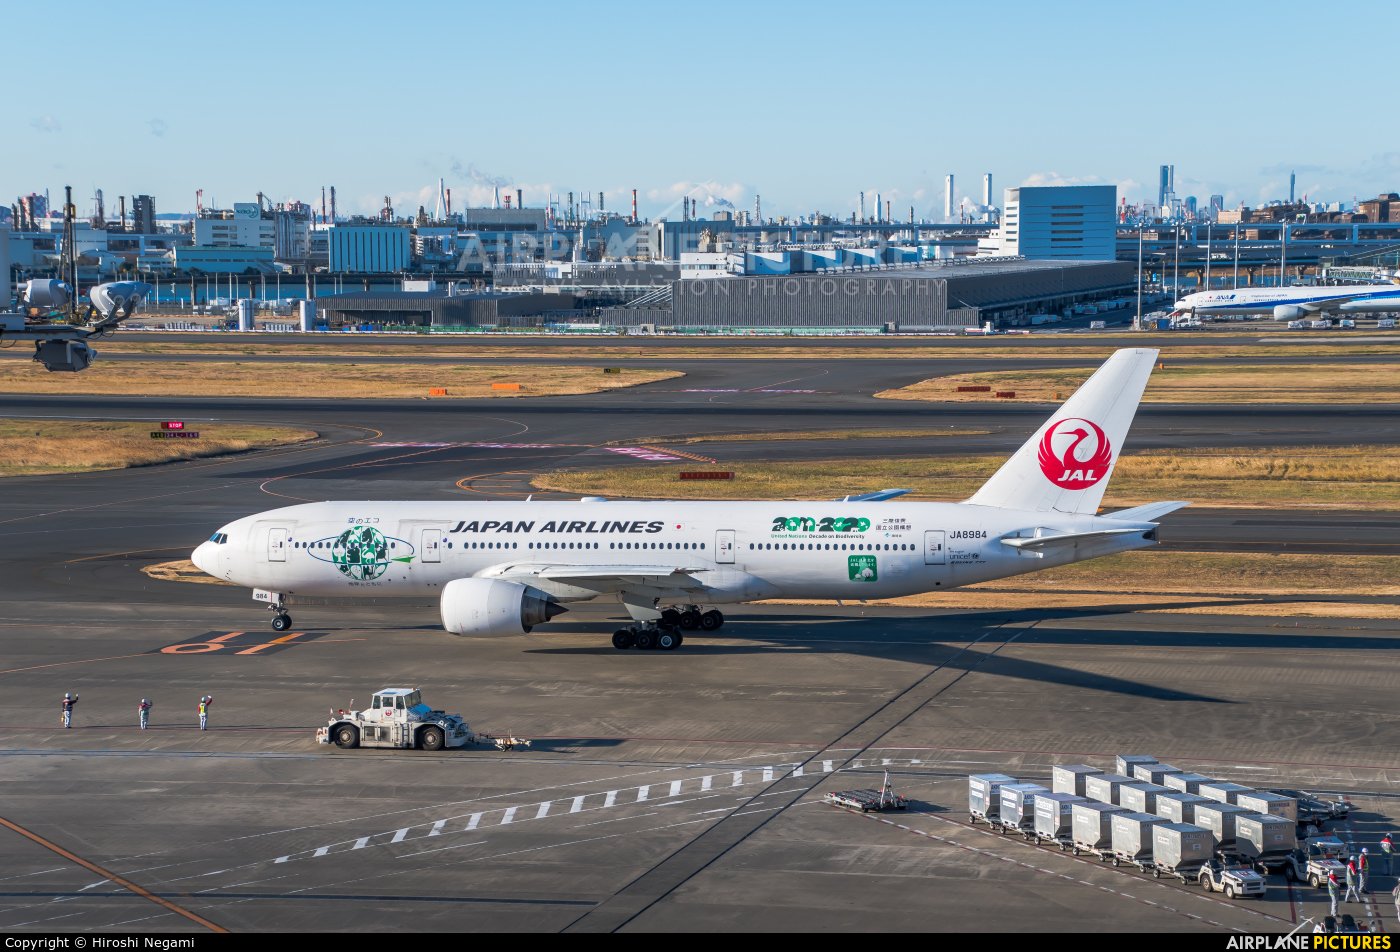 JAL - Japan Airlines JA8984 aircraft at Tokyo - Haneda Intl